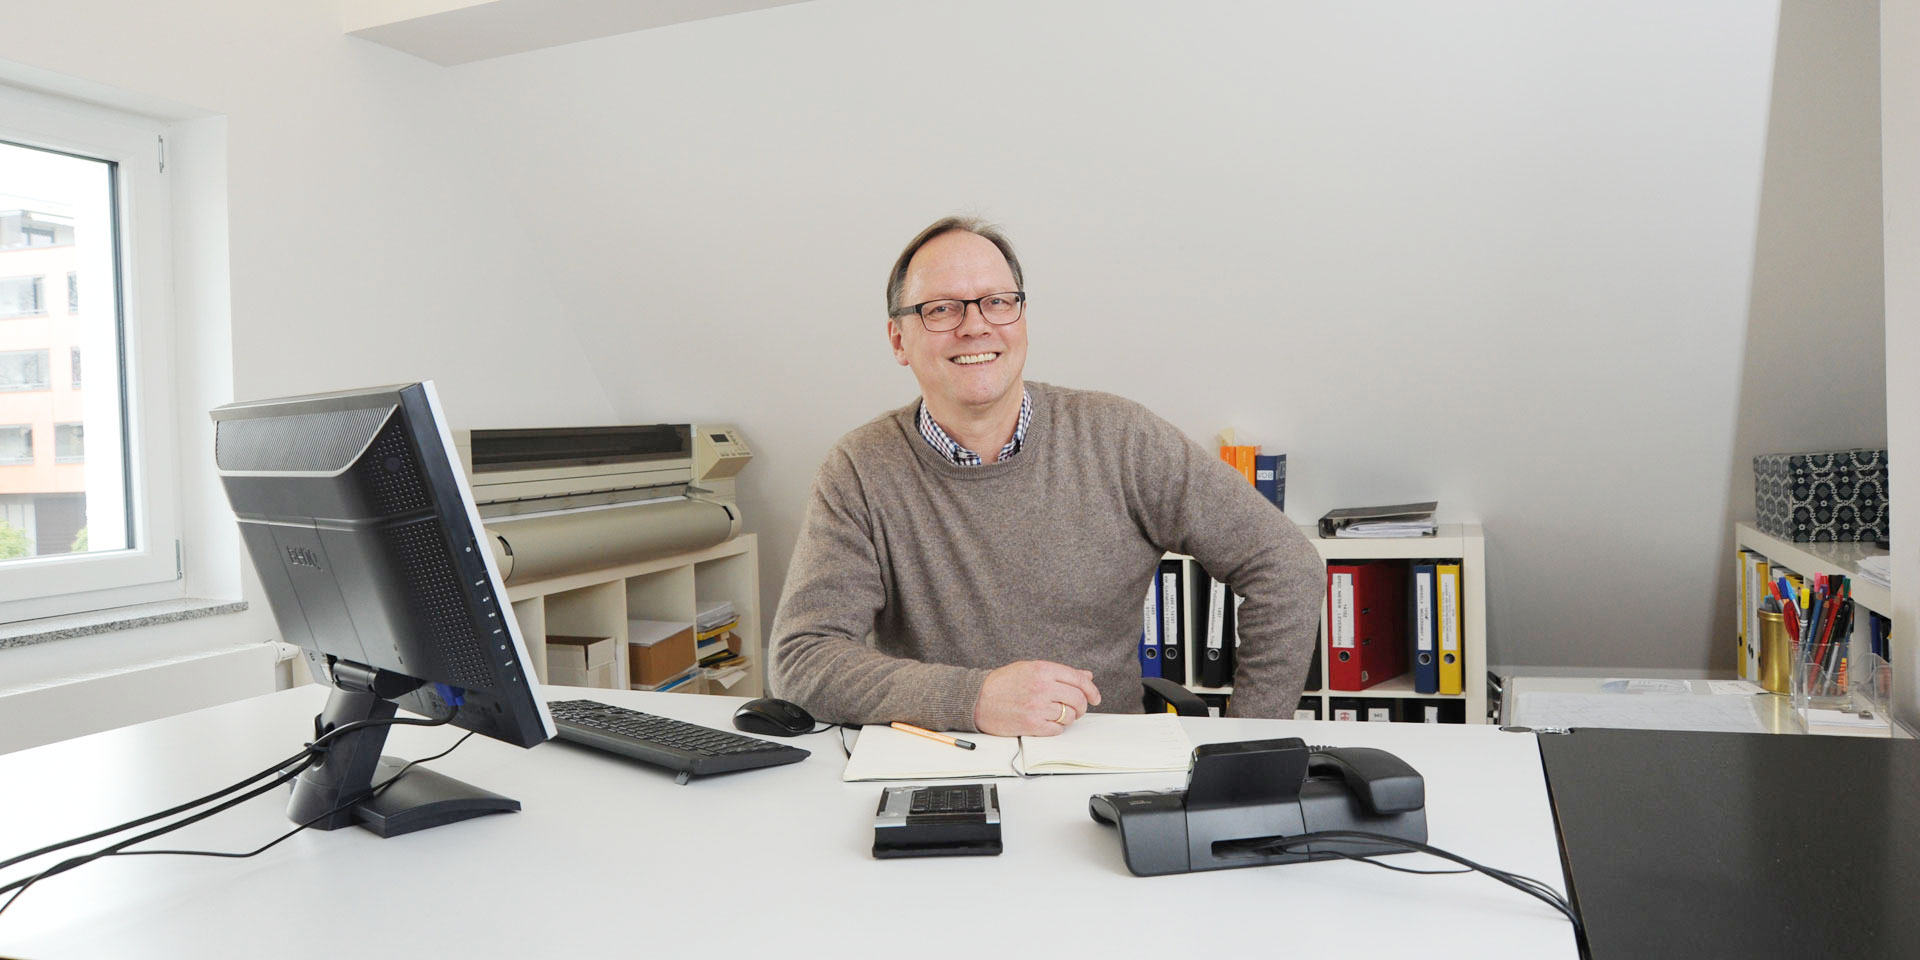 Architekt Thomas Frank in seinem Büro in Mainz